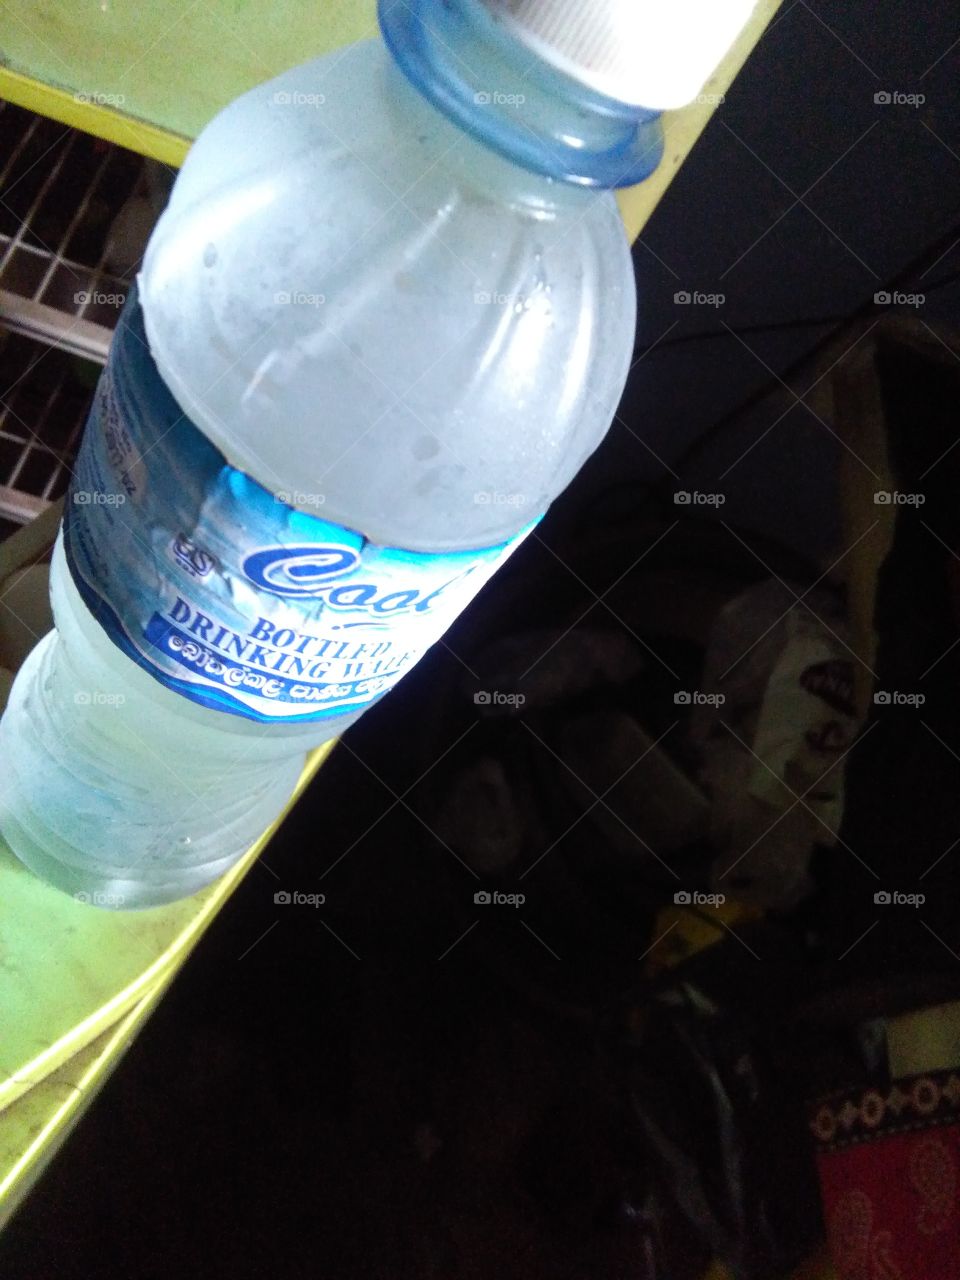 Cool water bottle